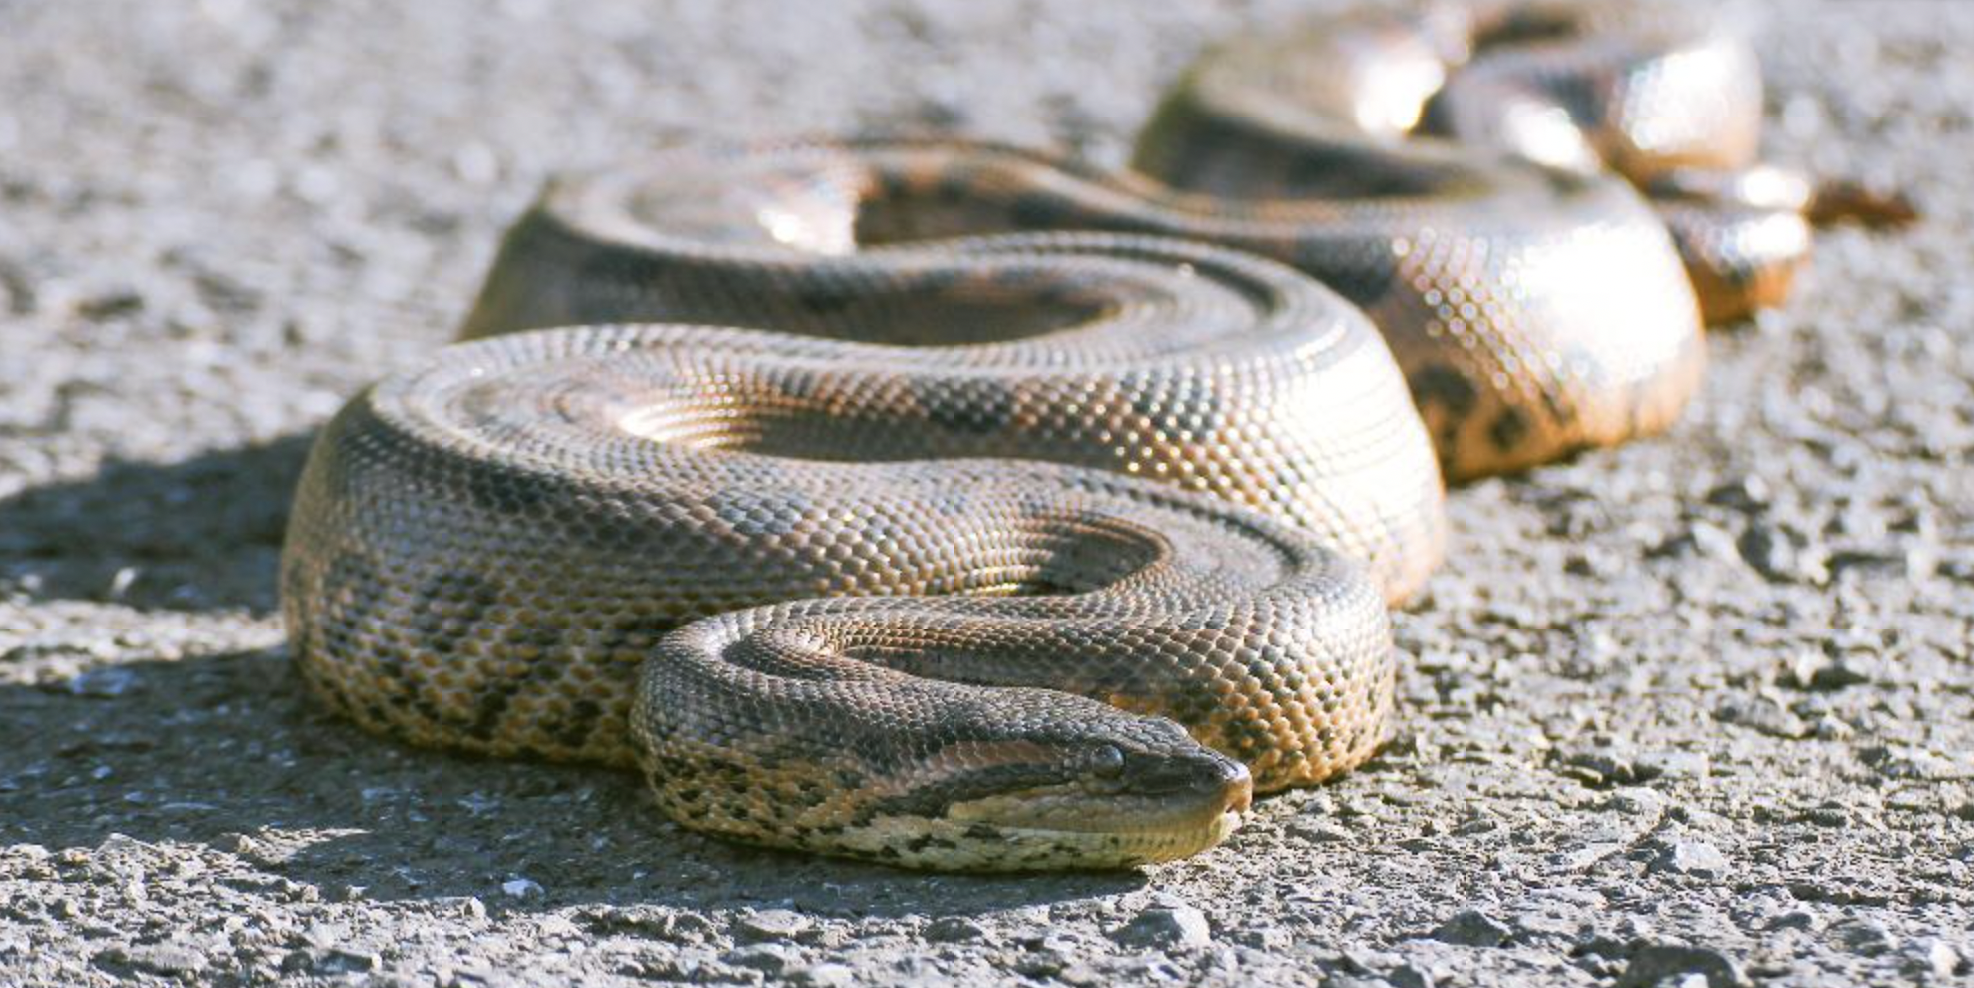 Estas cobras vivem perto de córregos, rios e lagos.